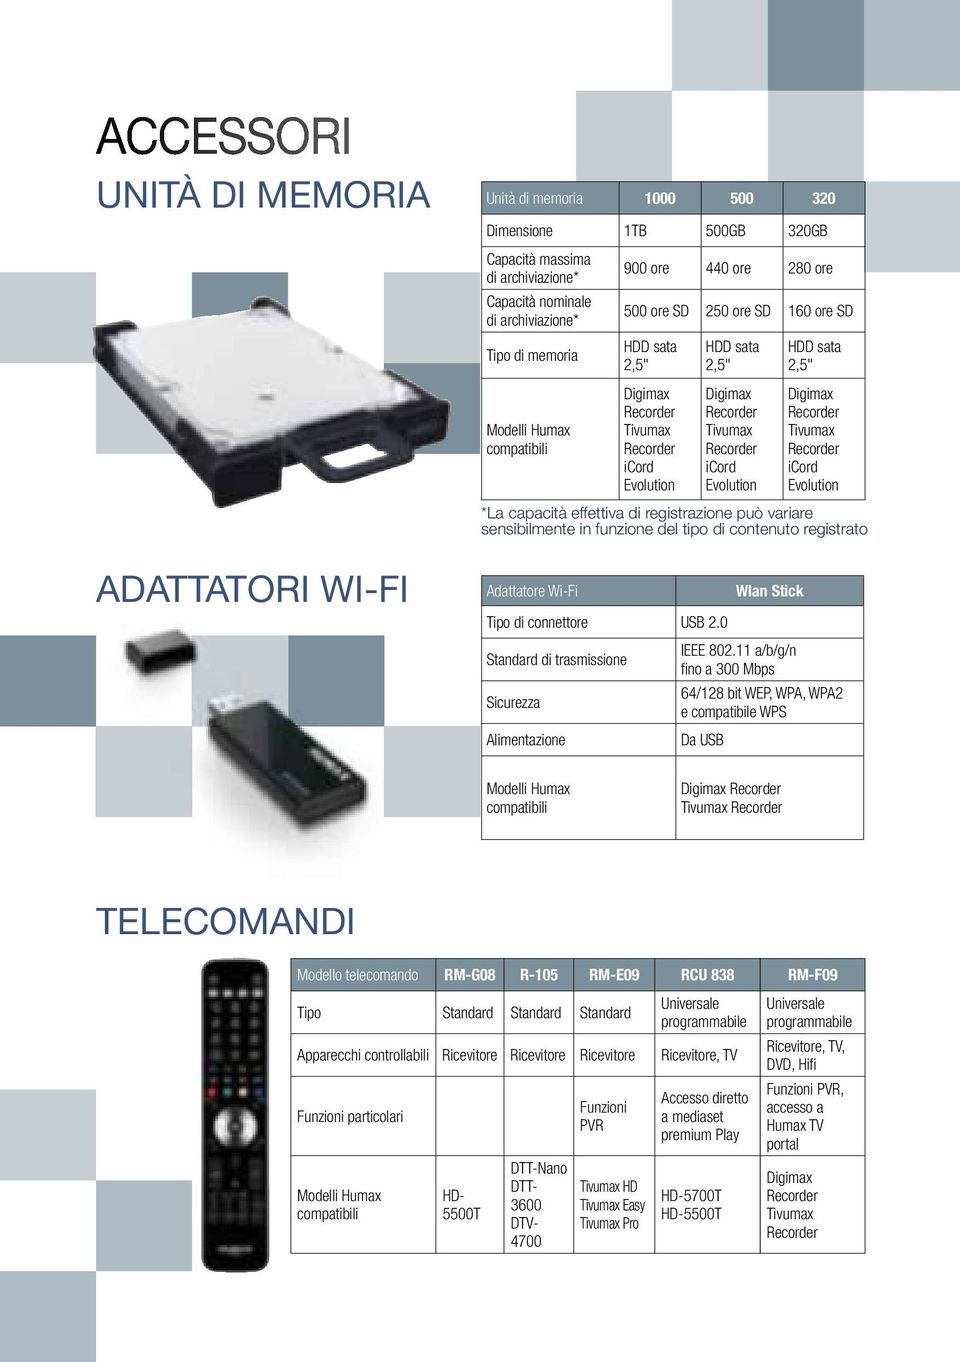 HDD sata 2,5" Digimax Recorder Tivumax Recorder icord Evolution *La capacità effettiva di registrazione può variare sensibilmente in funzione del tipo di contenuto registrato Adattatore Wi-Fi Wlan